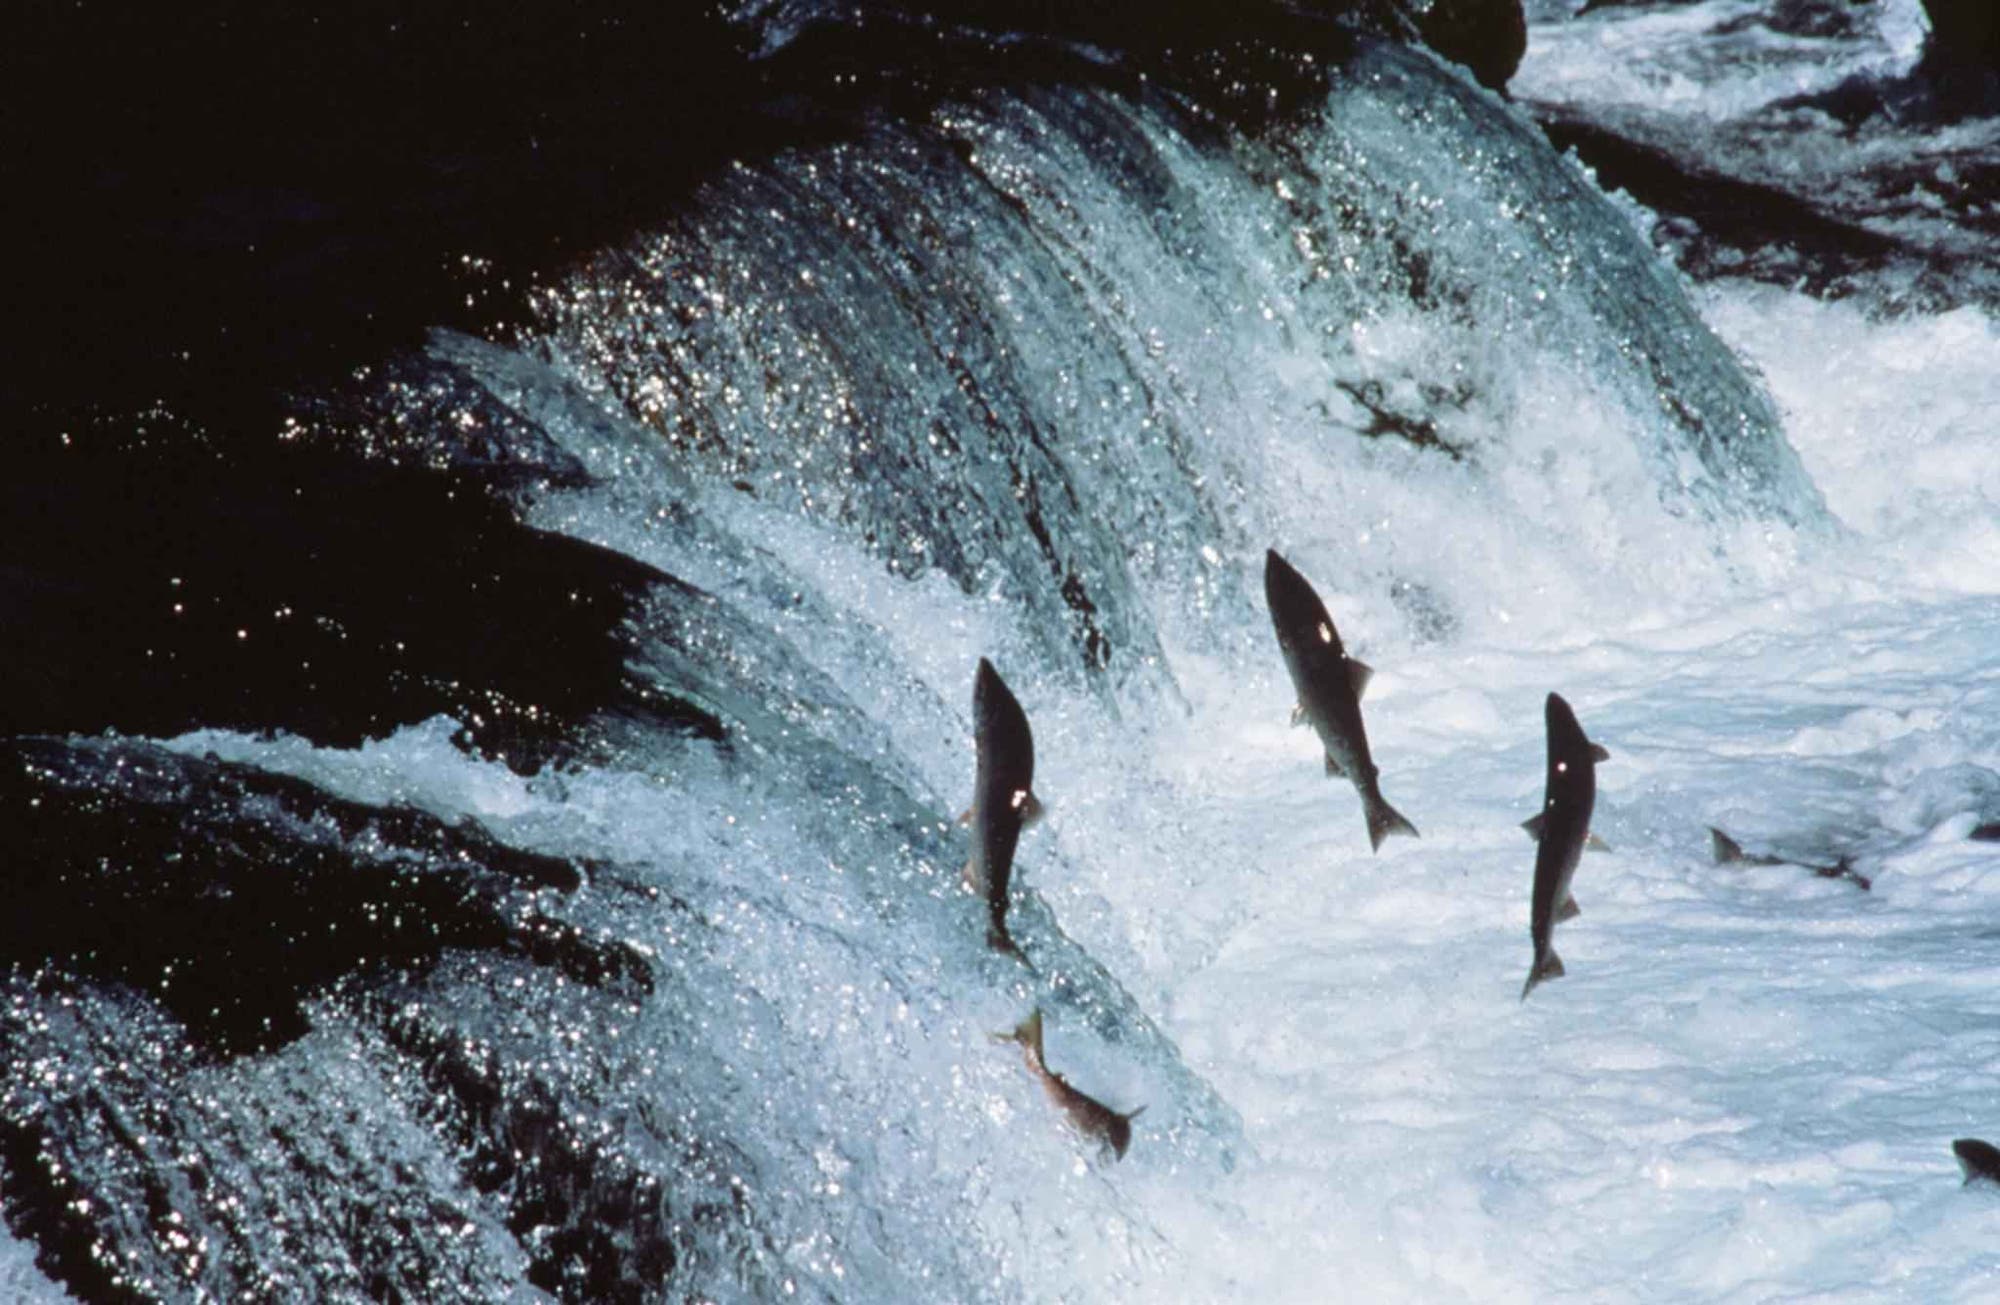 Ausgewachsene Lachse überwinden einen Wasserfall in Alaska